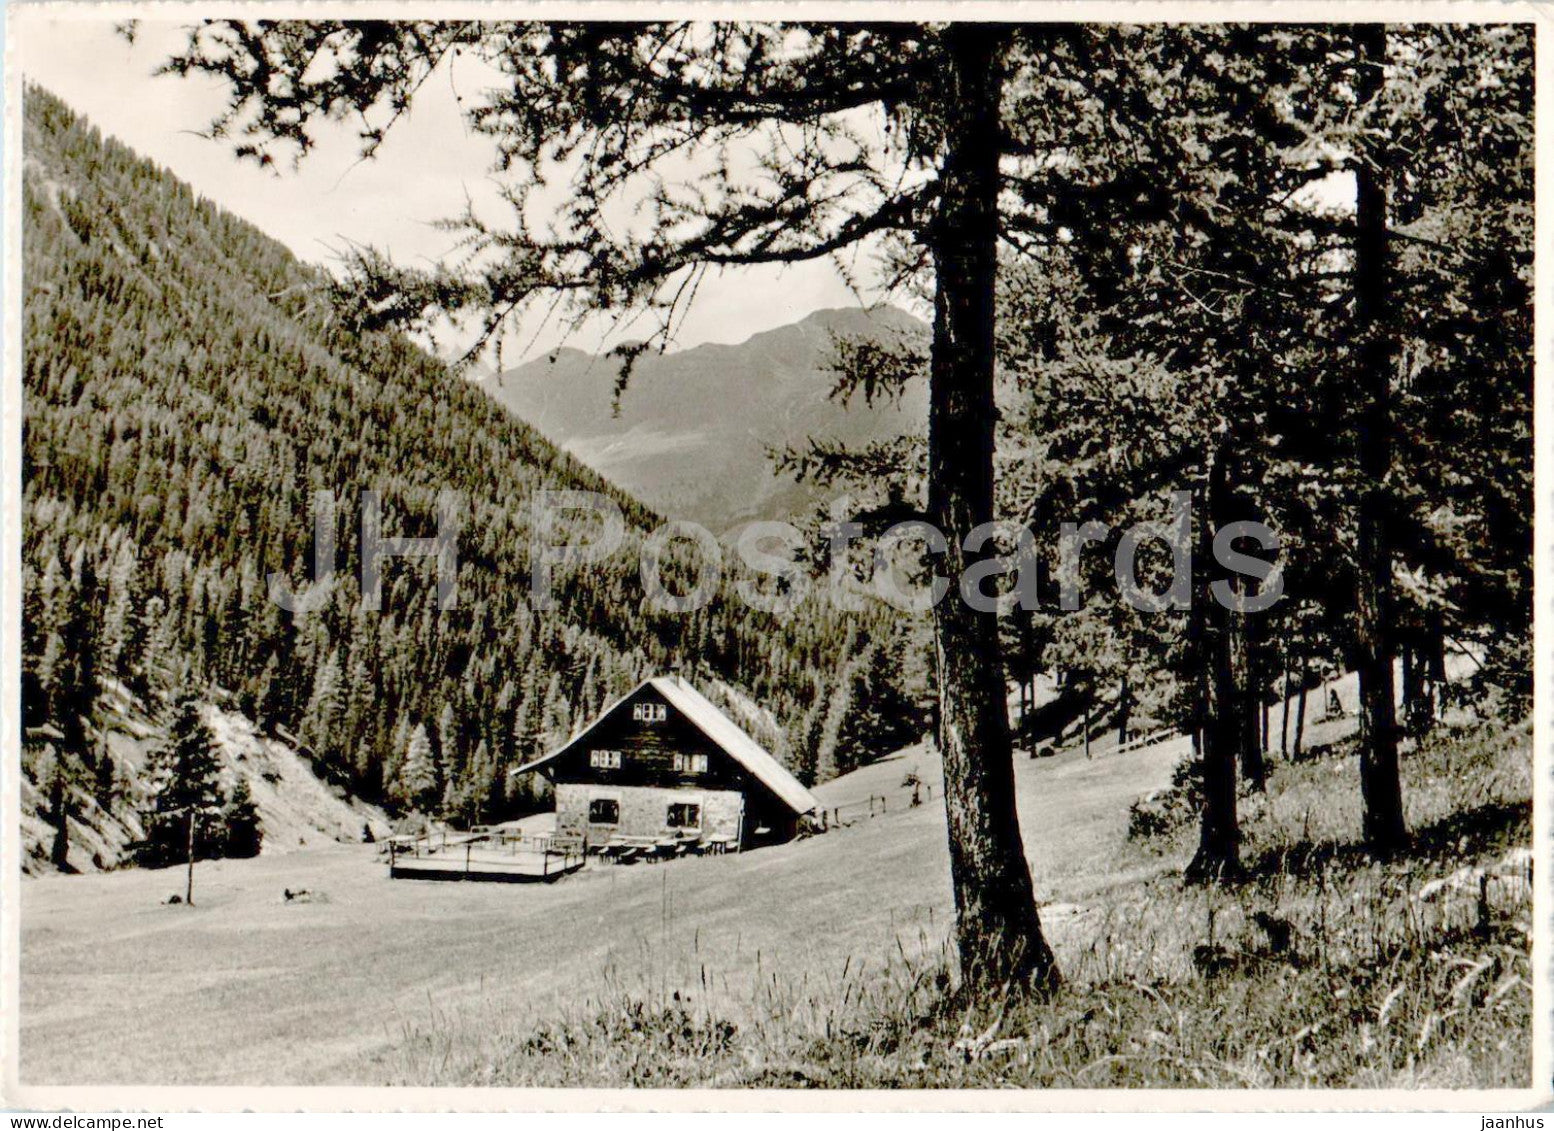 Parkhutte Varusch - Dar Tor zum Nationalpark von Zuoz u S-chanf - 334 - old postcard - 1954 - Switzerland - used - JH Postcards